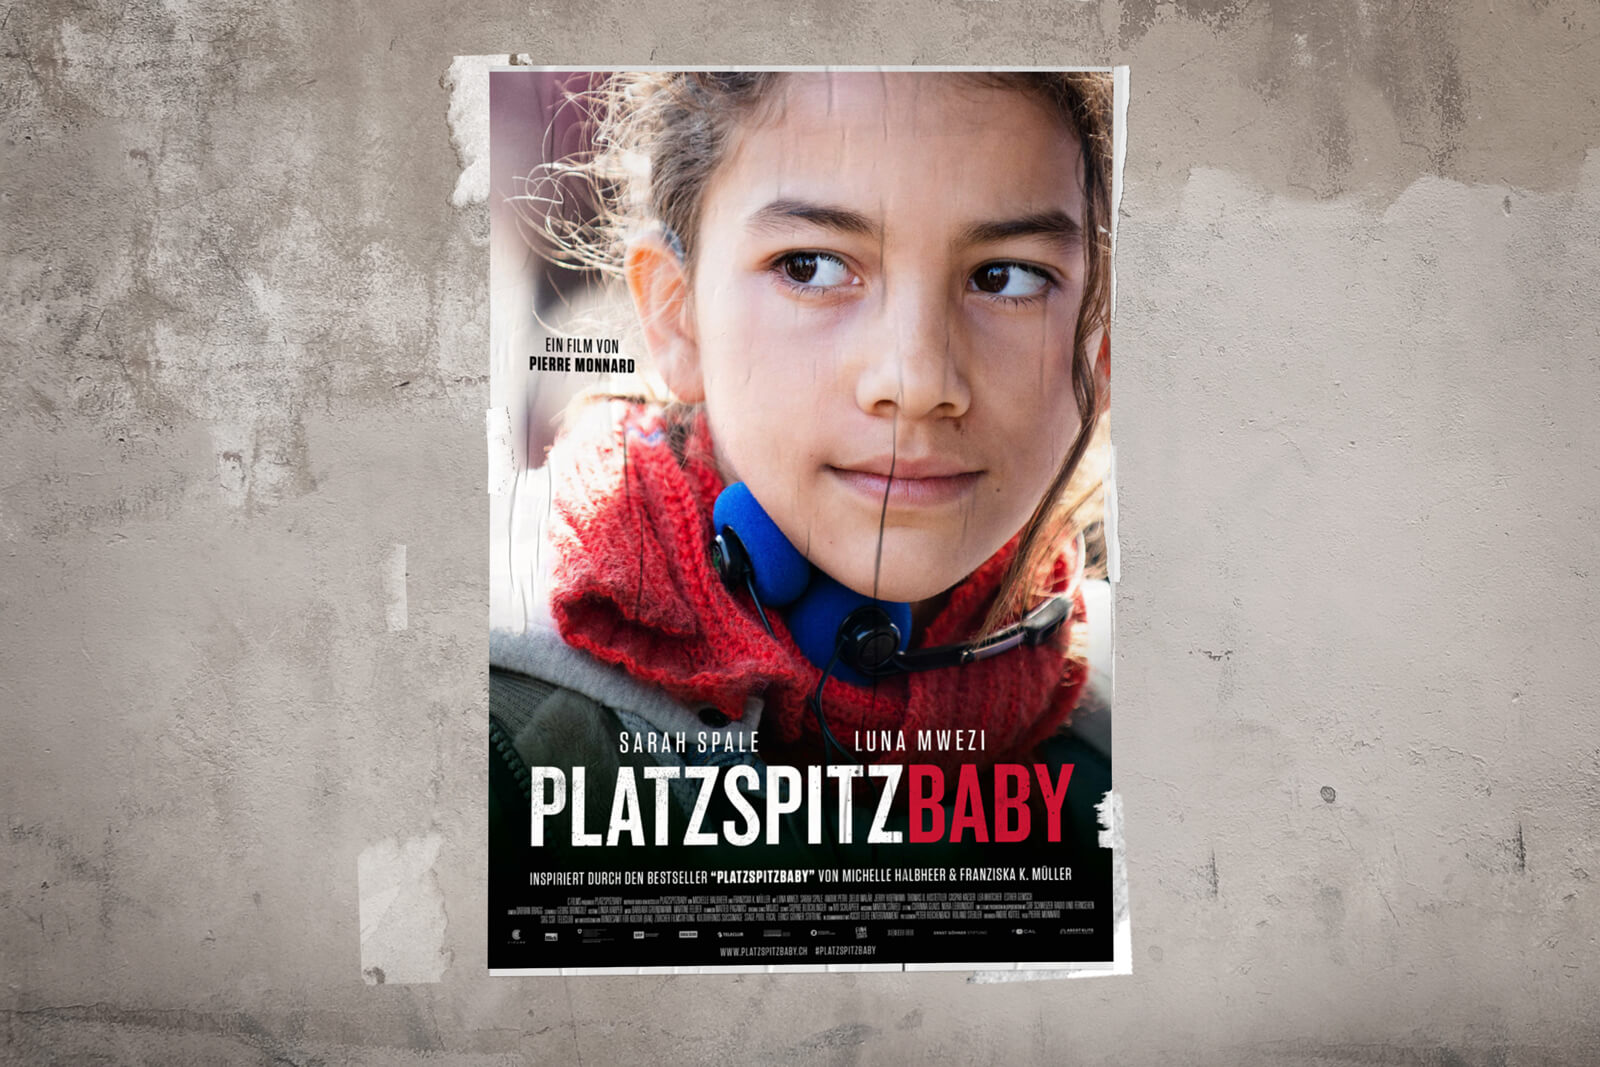 Platzspitzbaby Movie (2020)